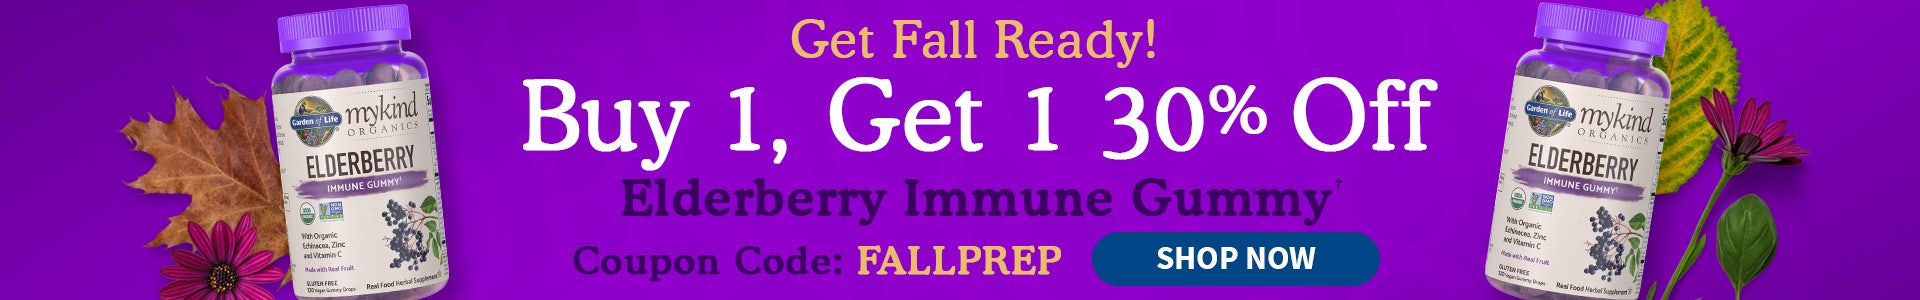 elderberry immune gummy